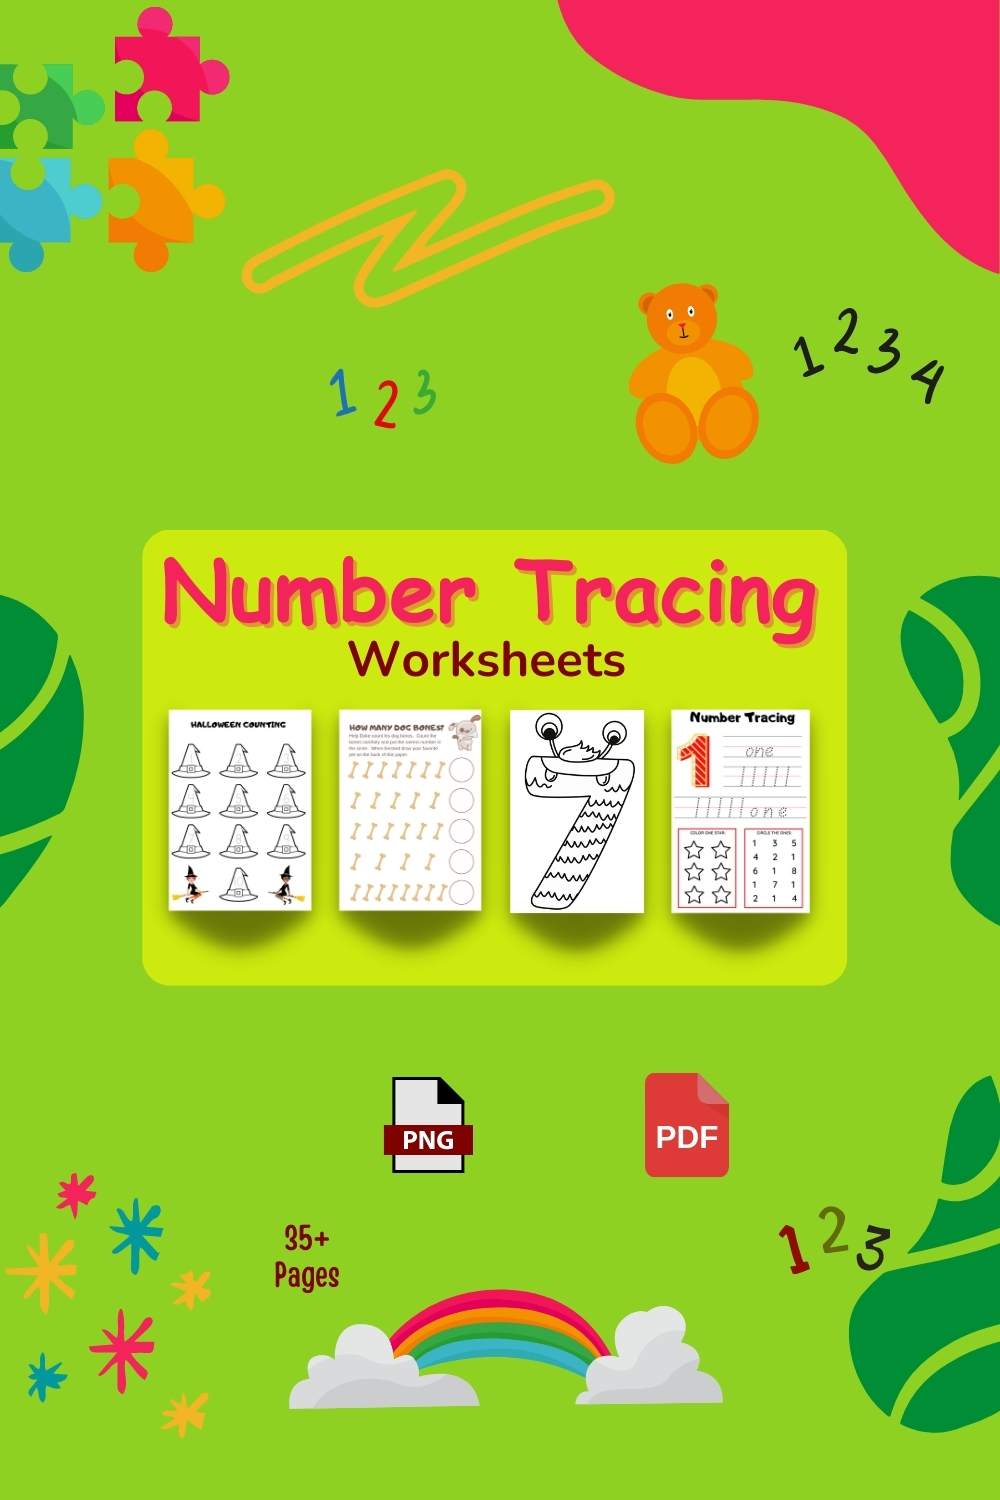 Kindergarten Math Number Sense Activities Writing Numbers 1-10 Practice pinterest preview image.